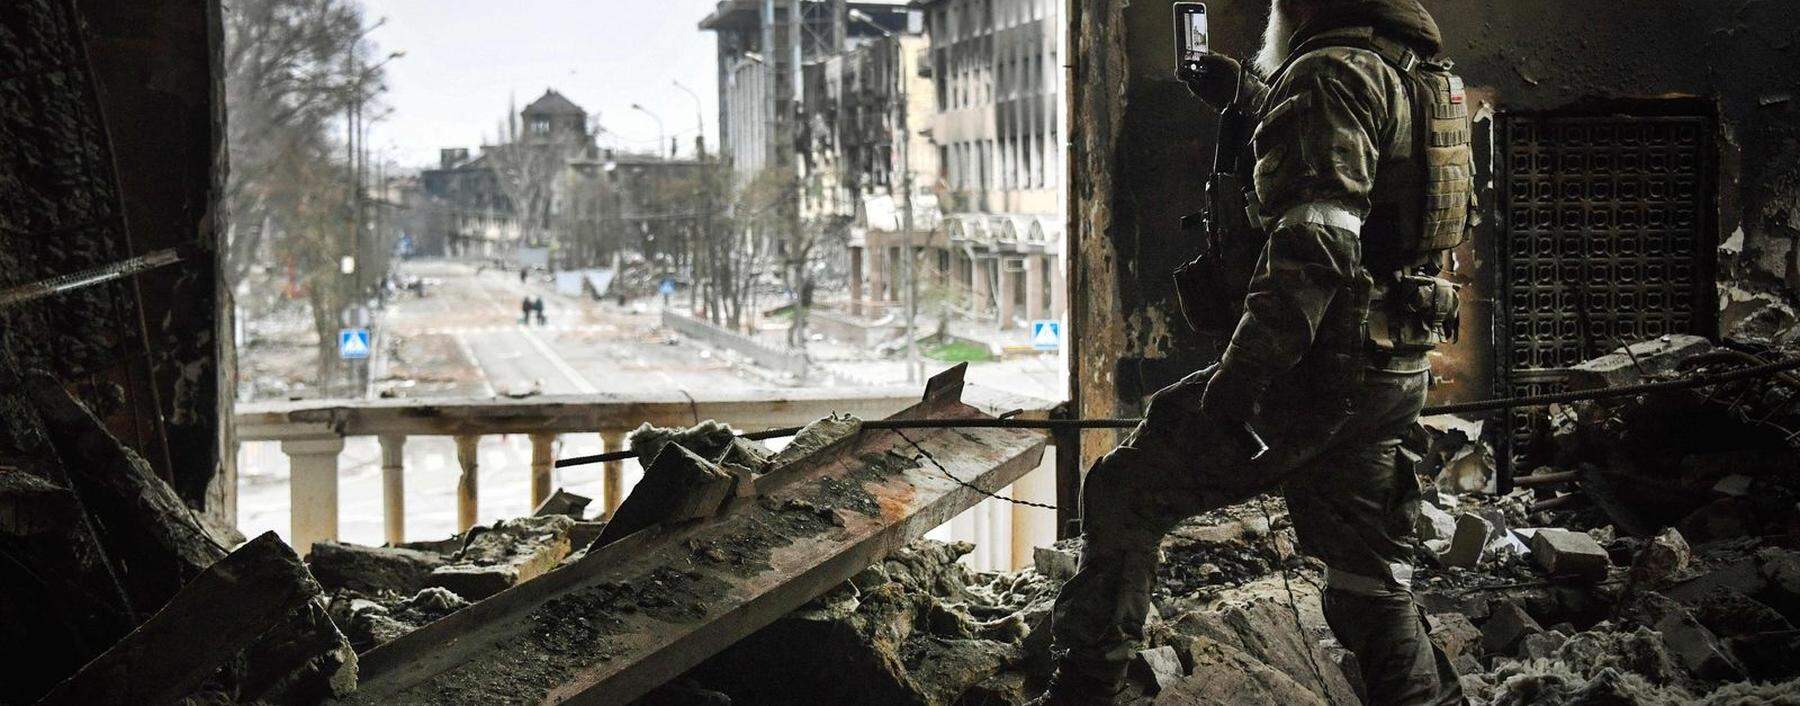 Ein russischer Soldat fotografiert die Ruinen des Theaters in Mariupol. Obwohl hier eindeutig Zivilisten Zuflucht gesucht hatten, wurde das Gebäude im März bombardiert. Die Anzahl der Opfer ist unklar. 